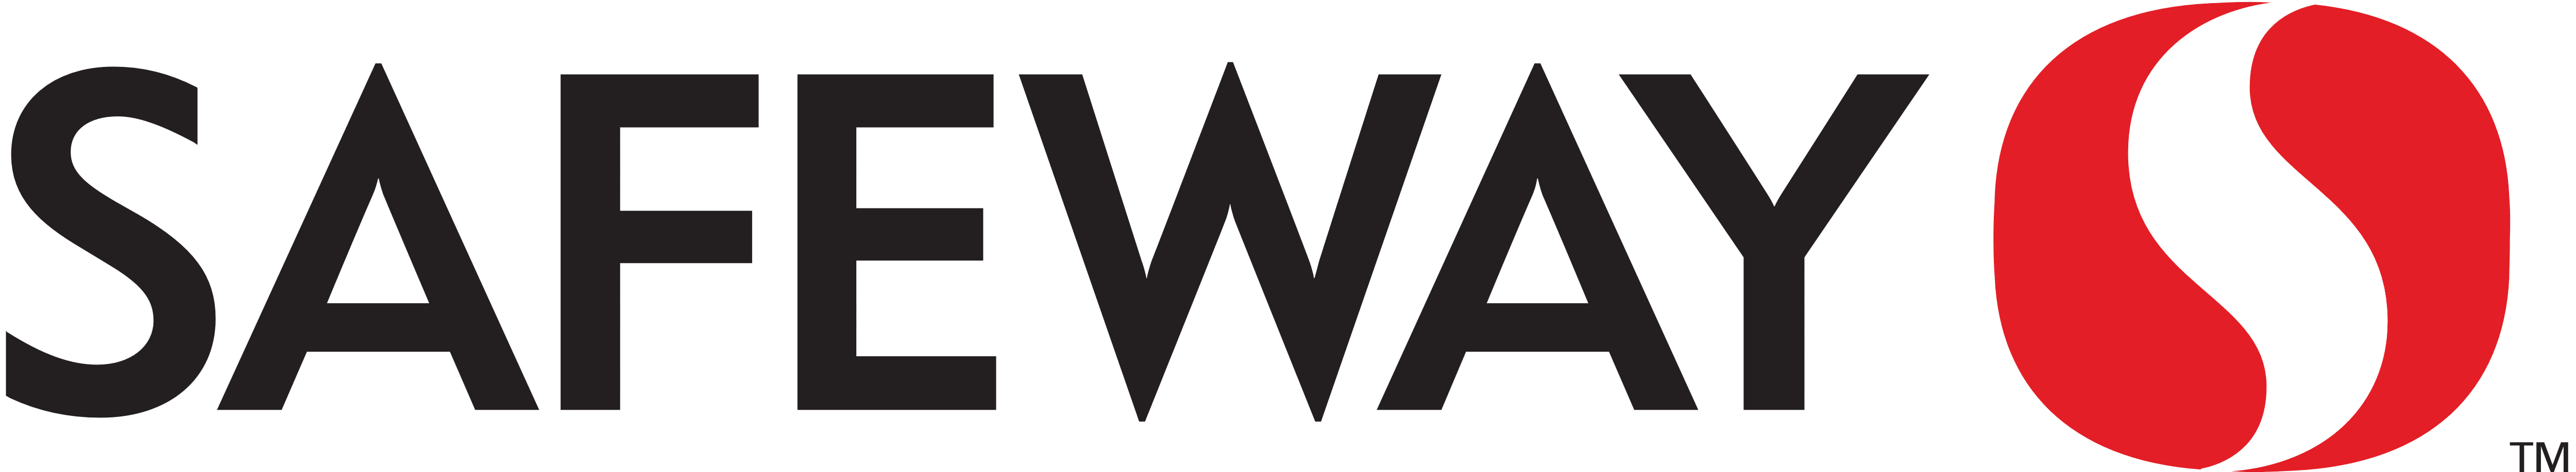 Safeway Logos Download